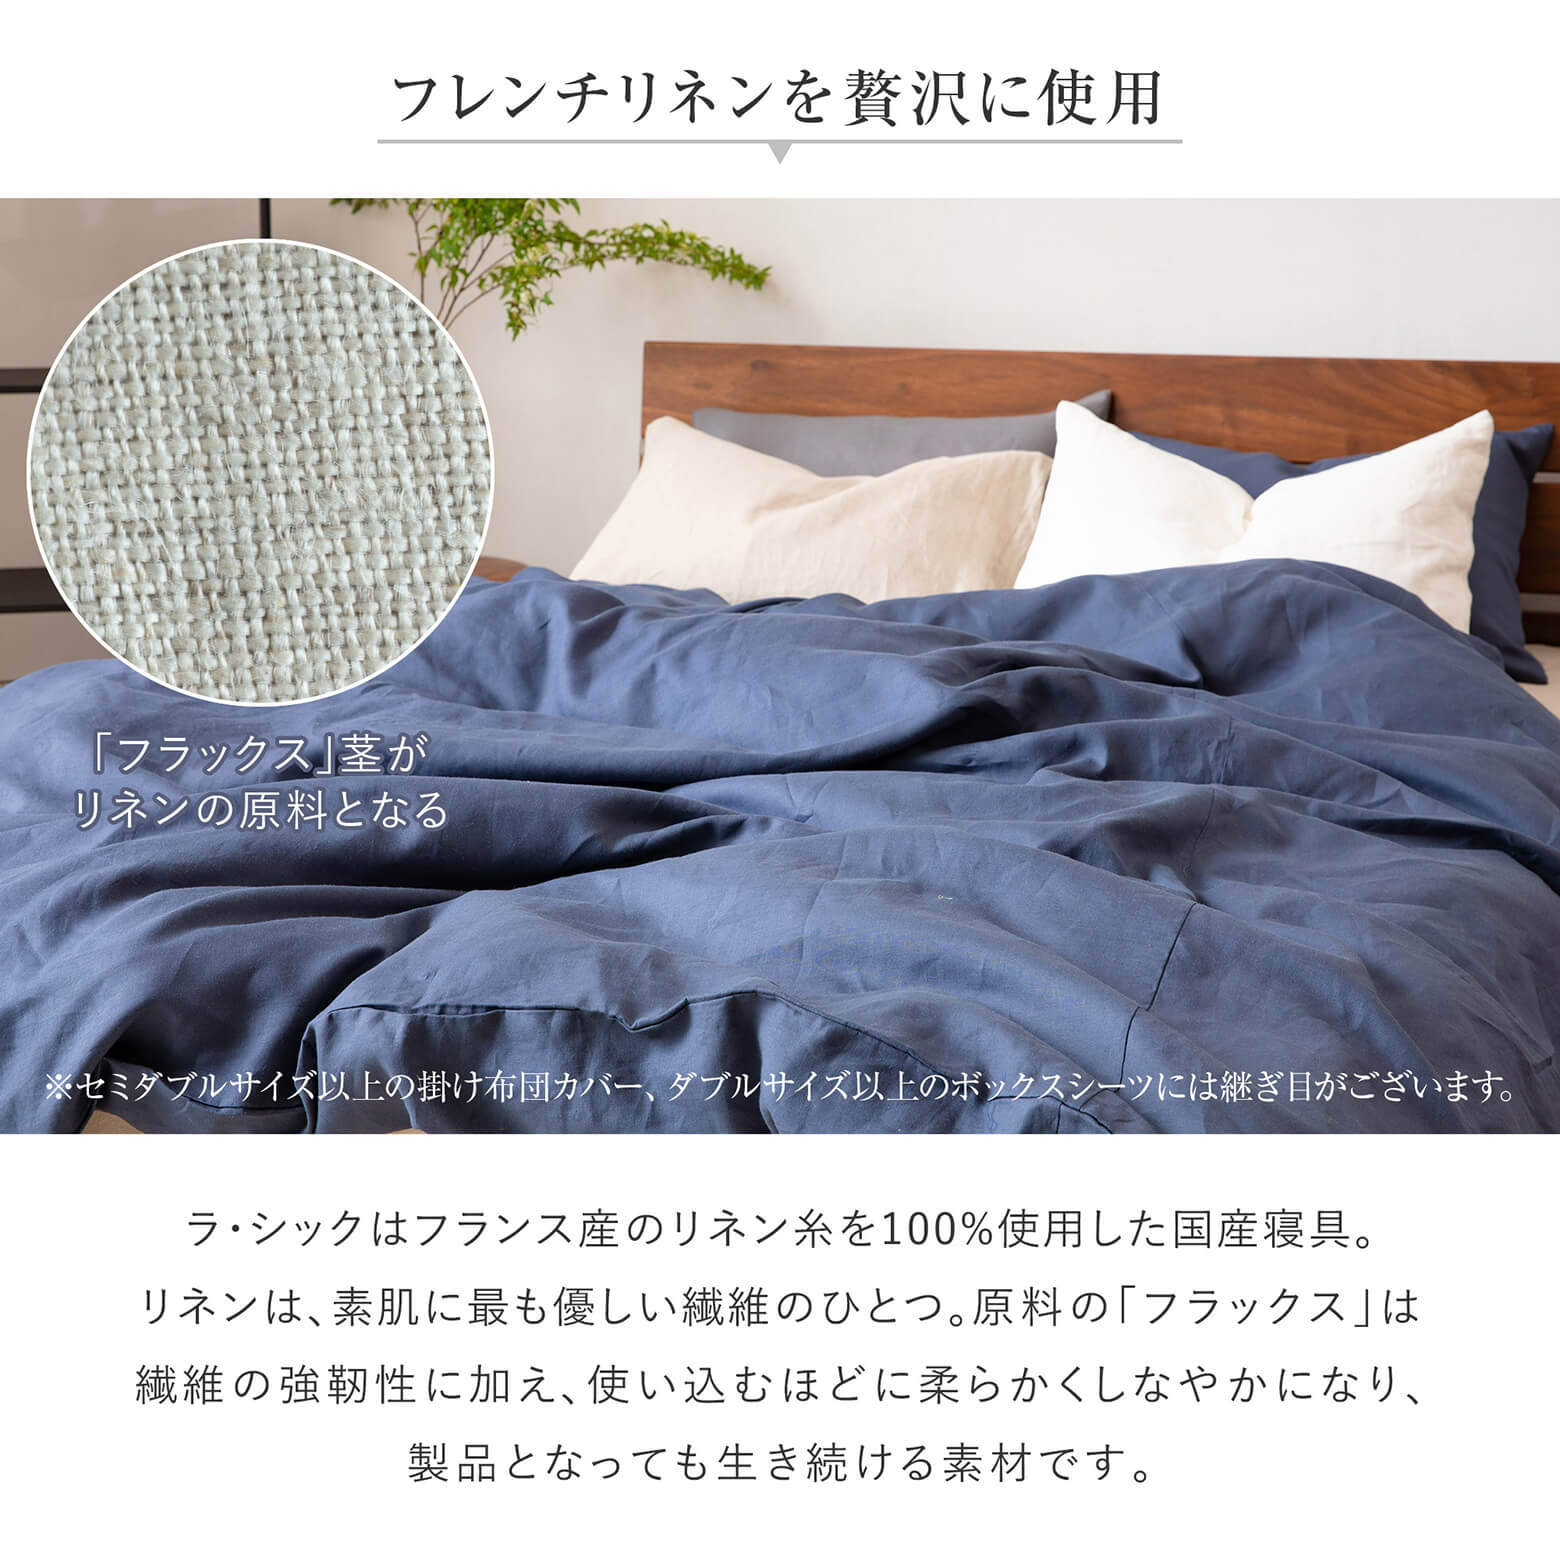 日本未入荷 枕カバー フリル 43×63 リネン 麻 4色 フレンチリネン100% 日本製 ラシック La.Chic Mサイズ ピローケース3 980円